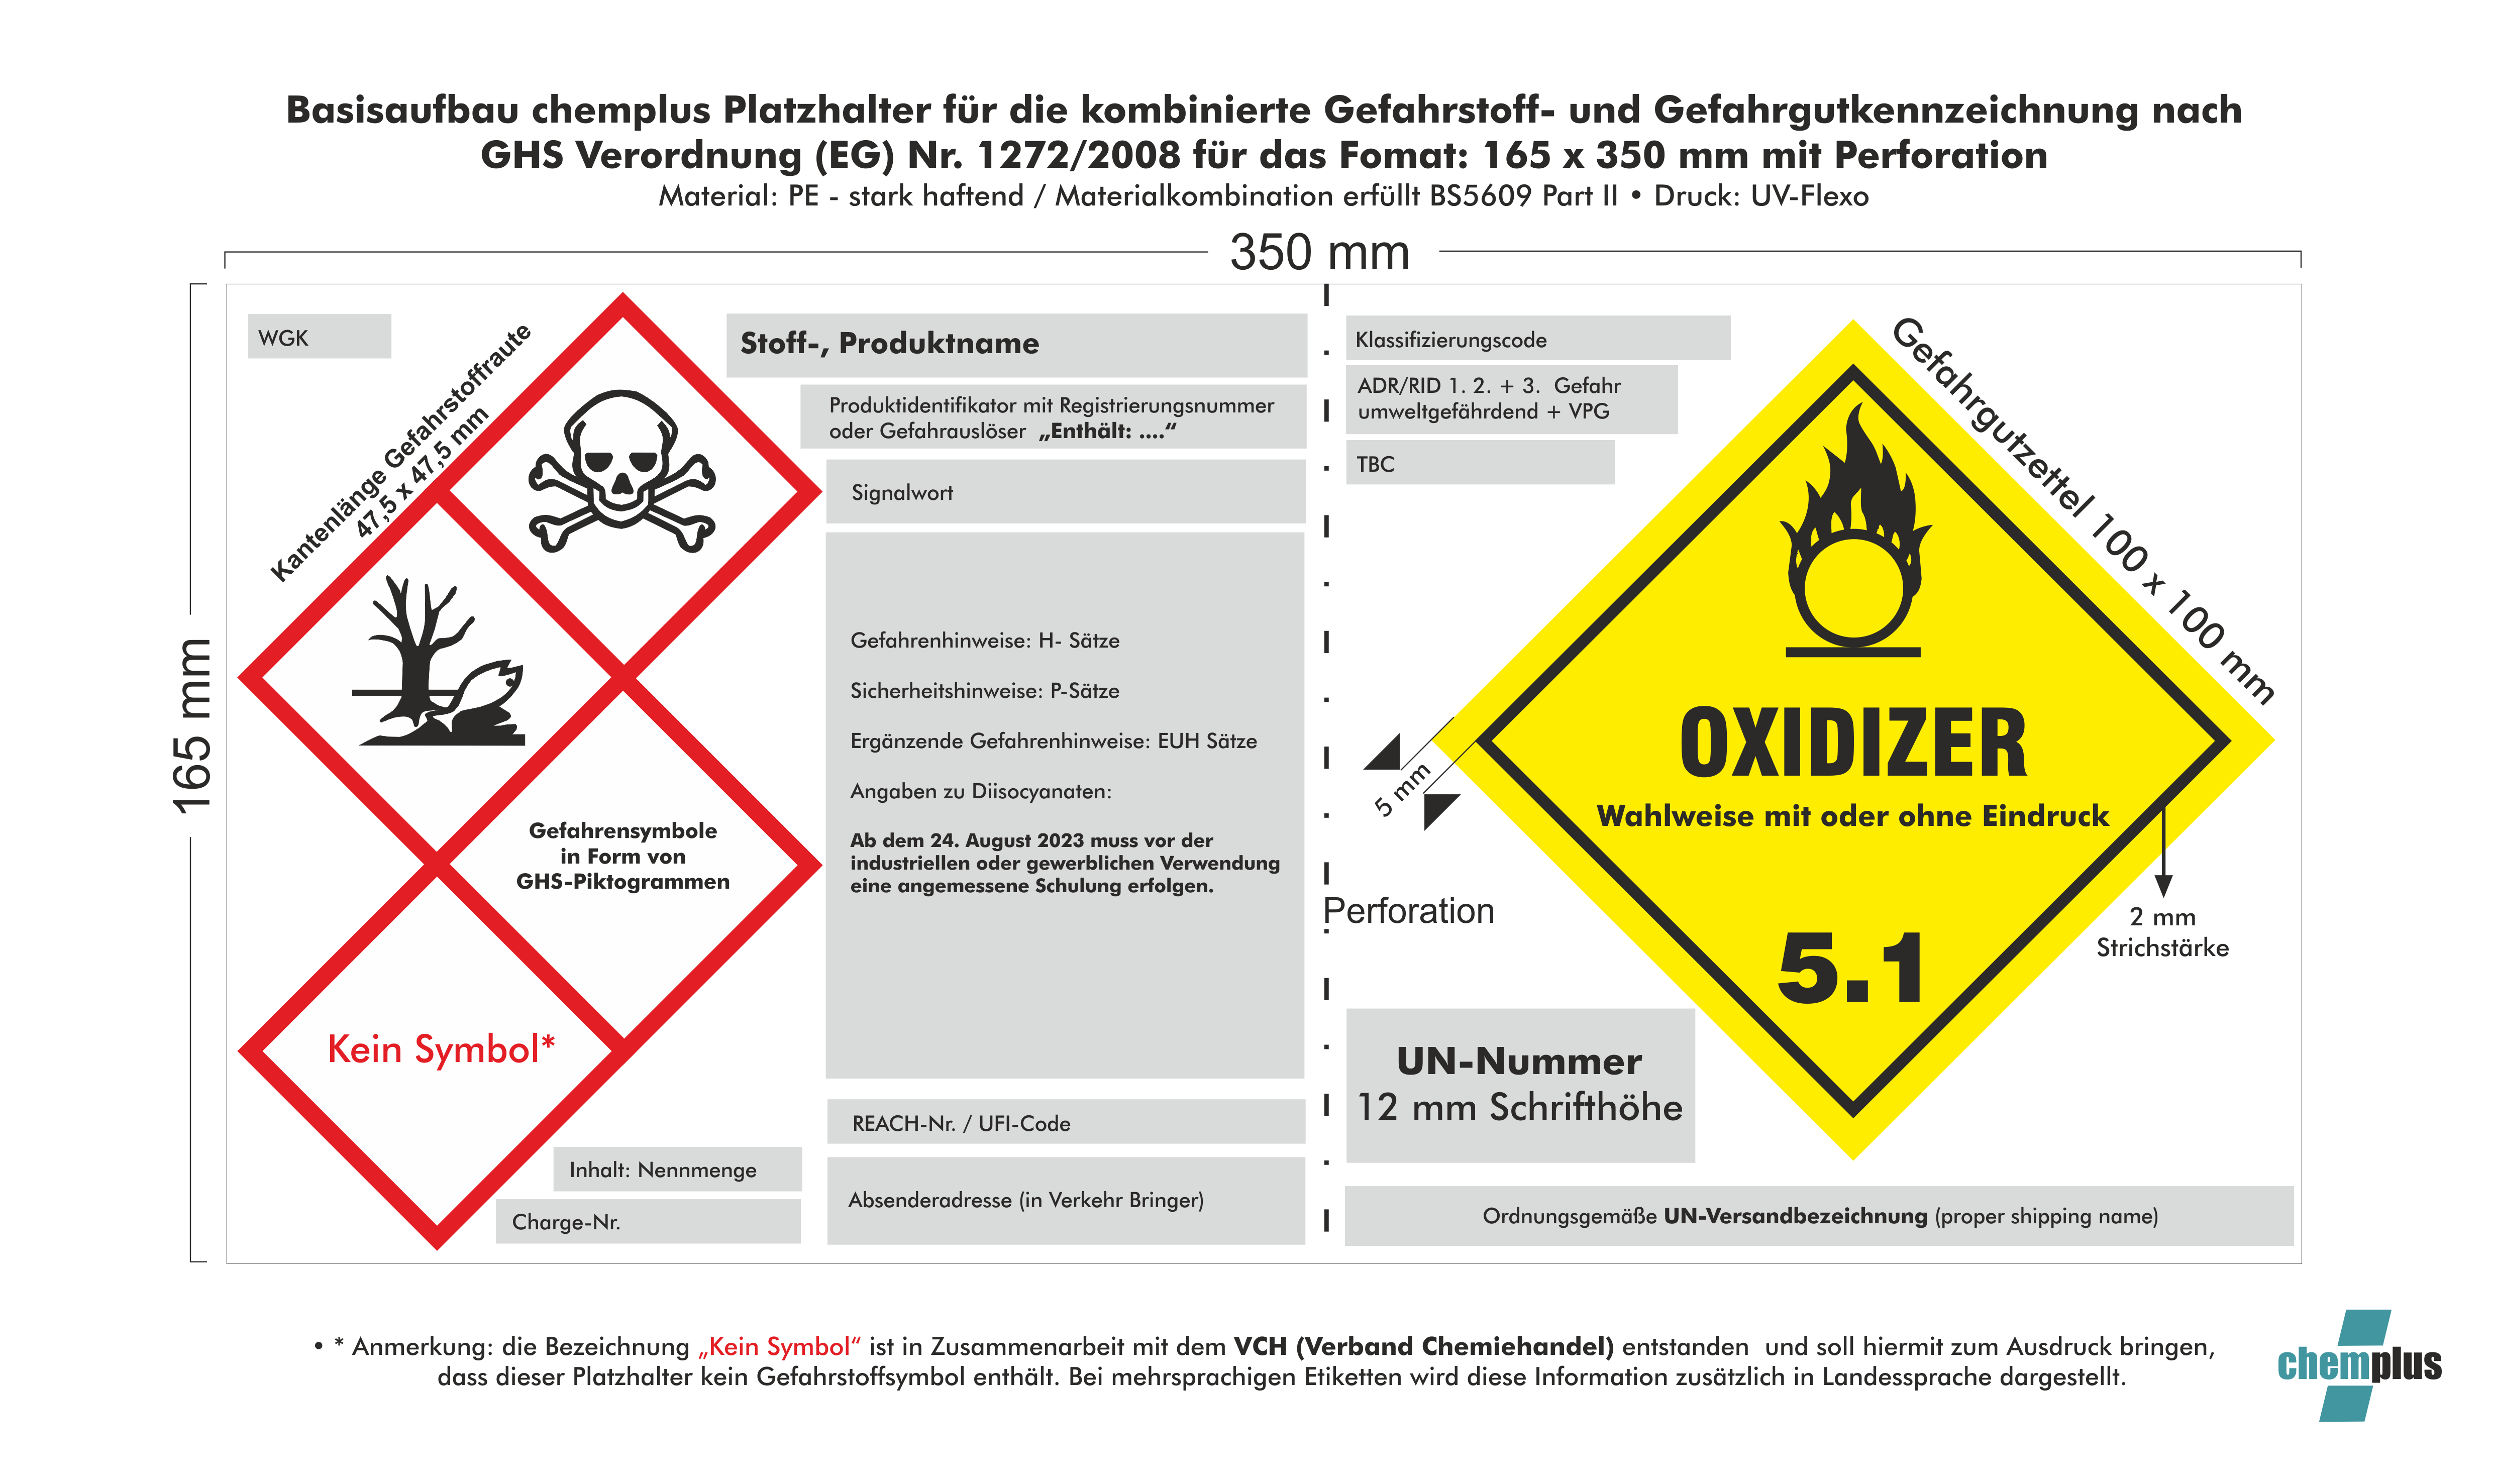 Chemikalien- und Transportkennzeichnung gesetzeskonform umsetzen